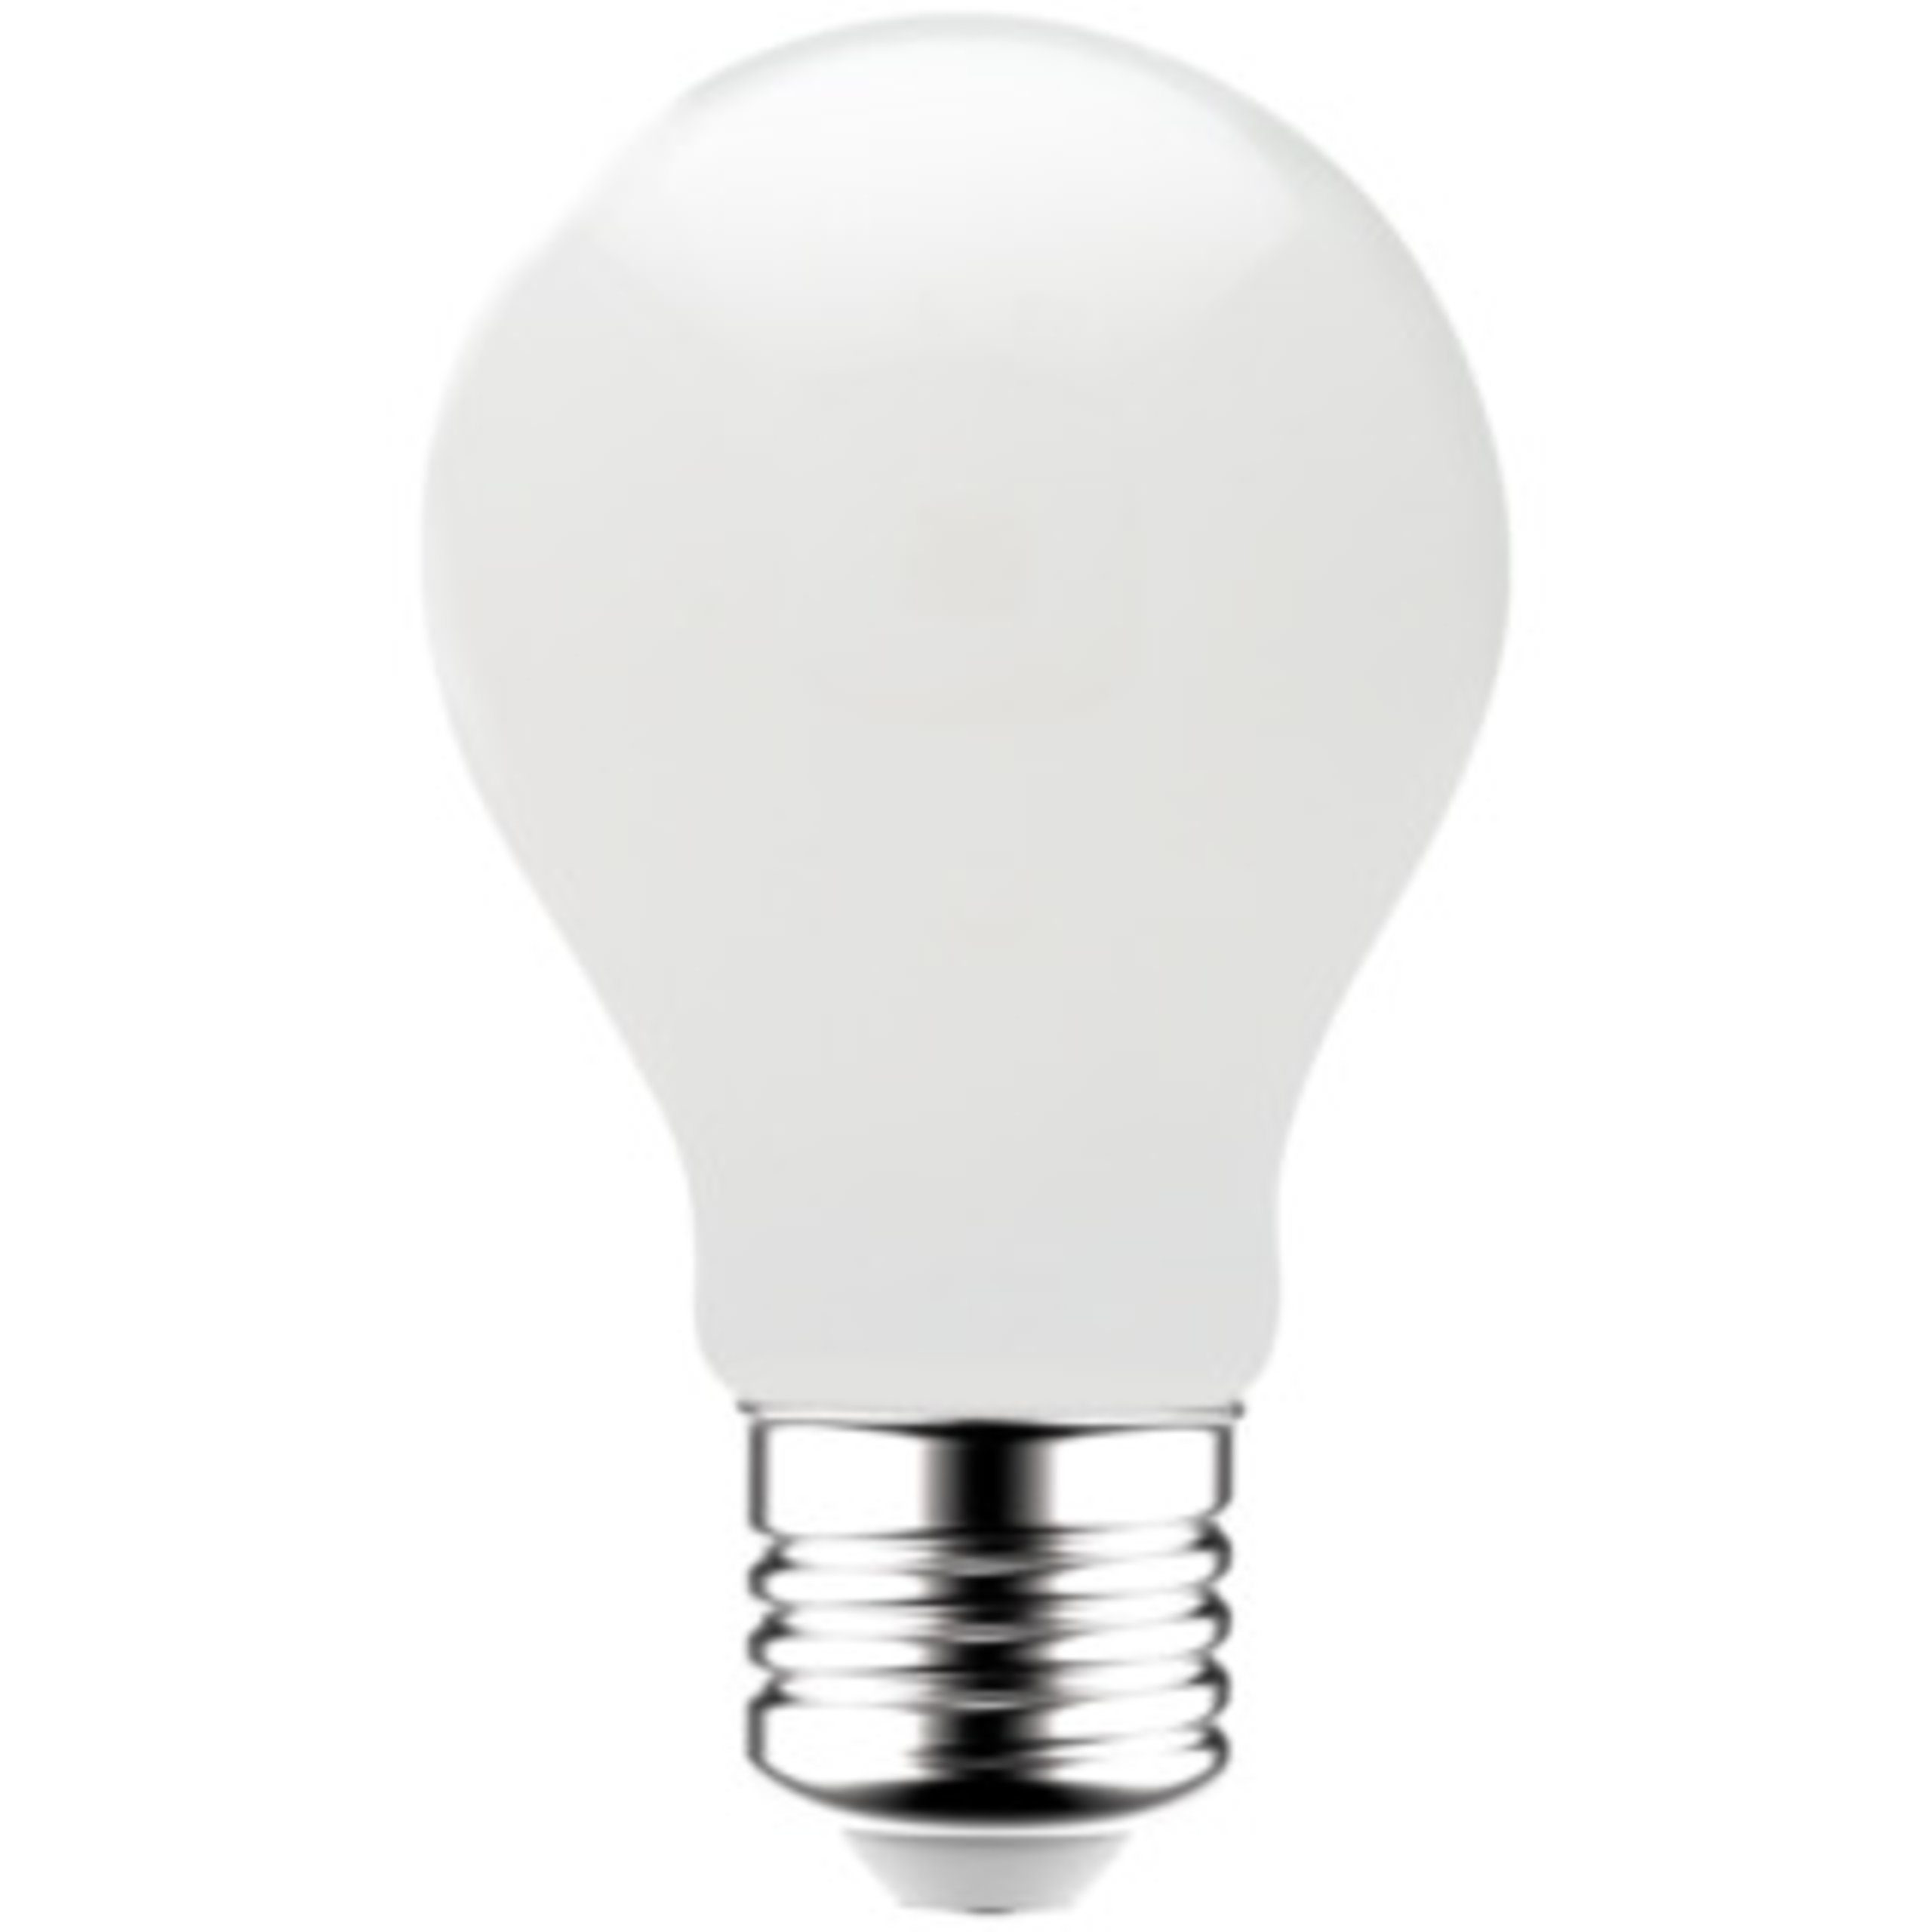 LED's light LED-Leuchtmittel 0620143 LED Glühbirne, E27, E27 7W warmweiß Opal A60